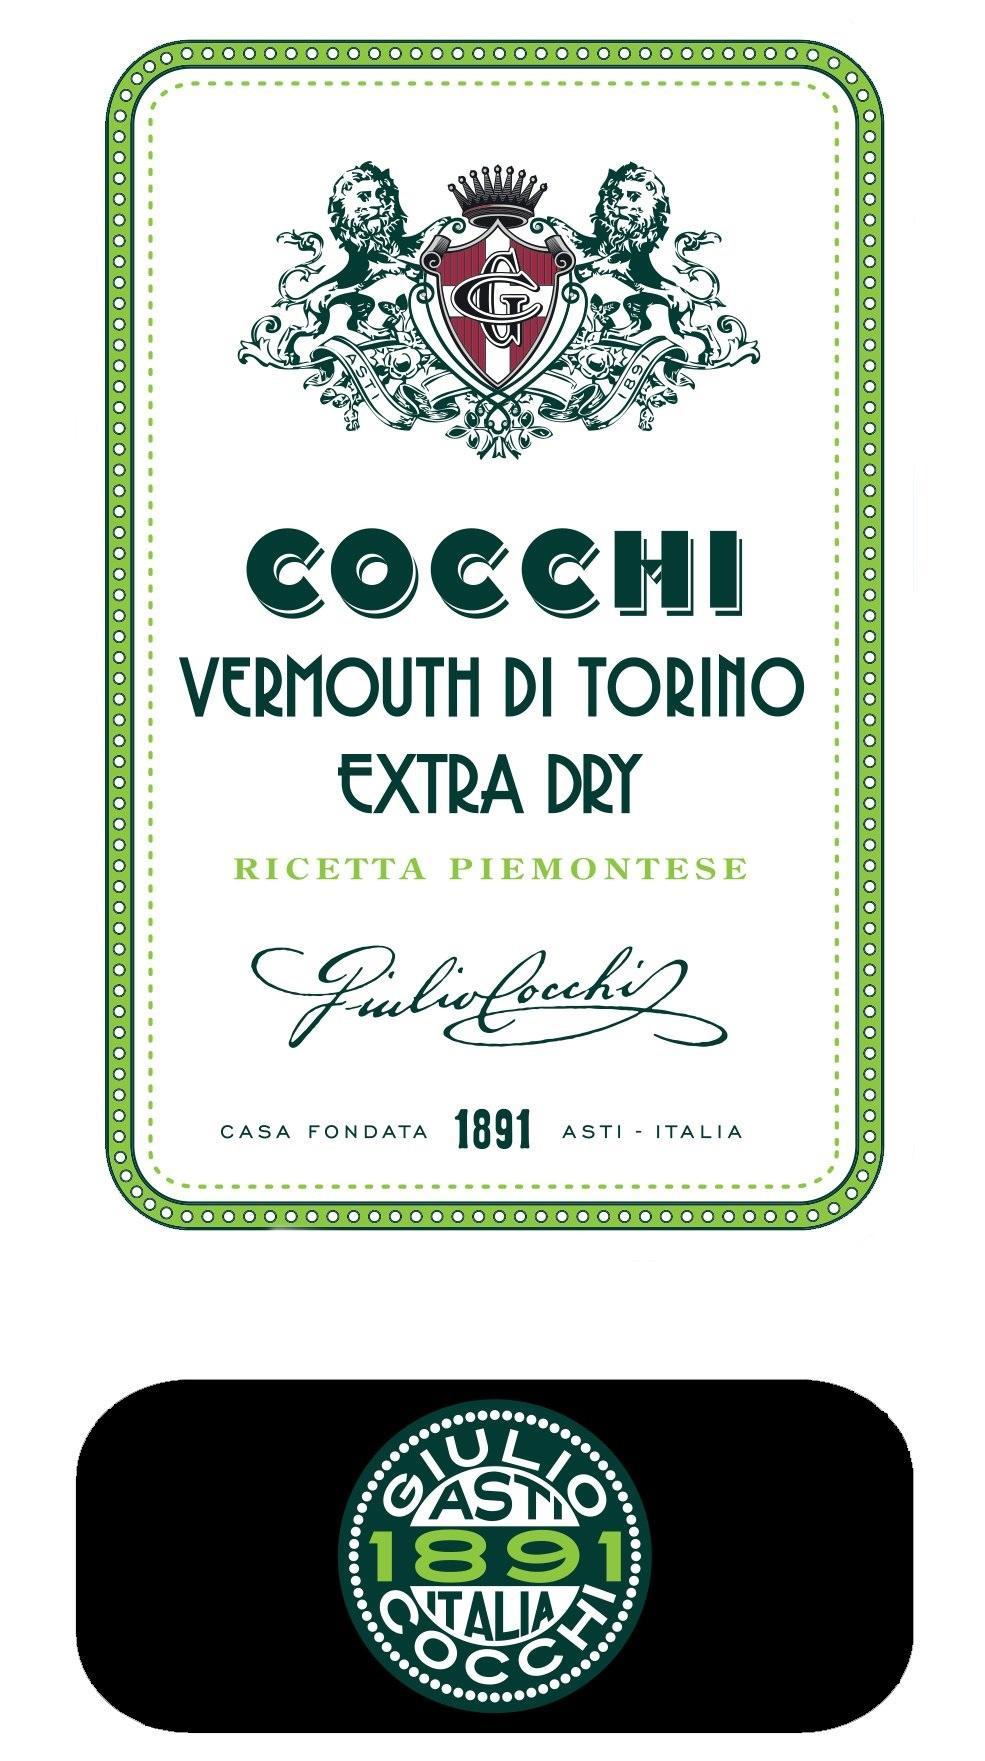 cocchi cocchi vermouth di torino extra dry ricetta piemontese 50 cl